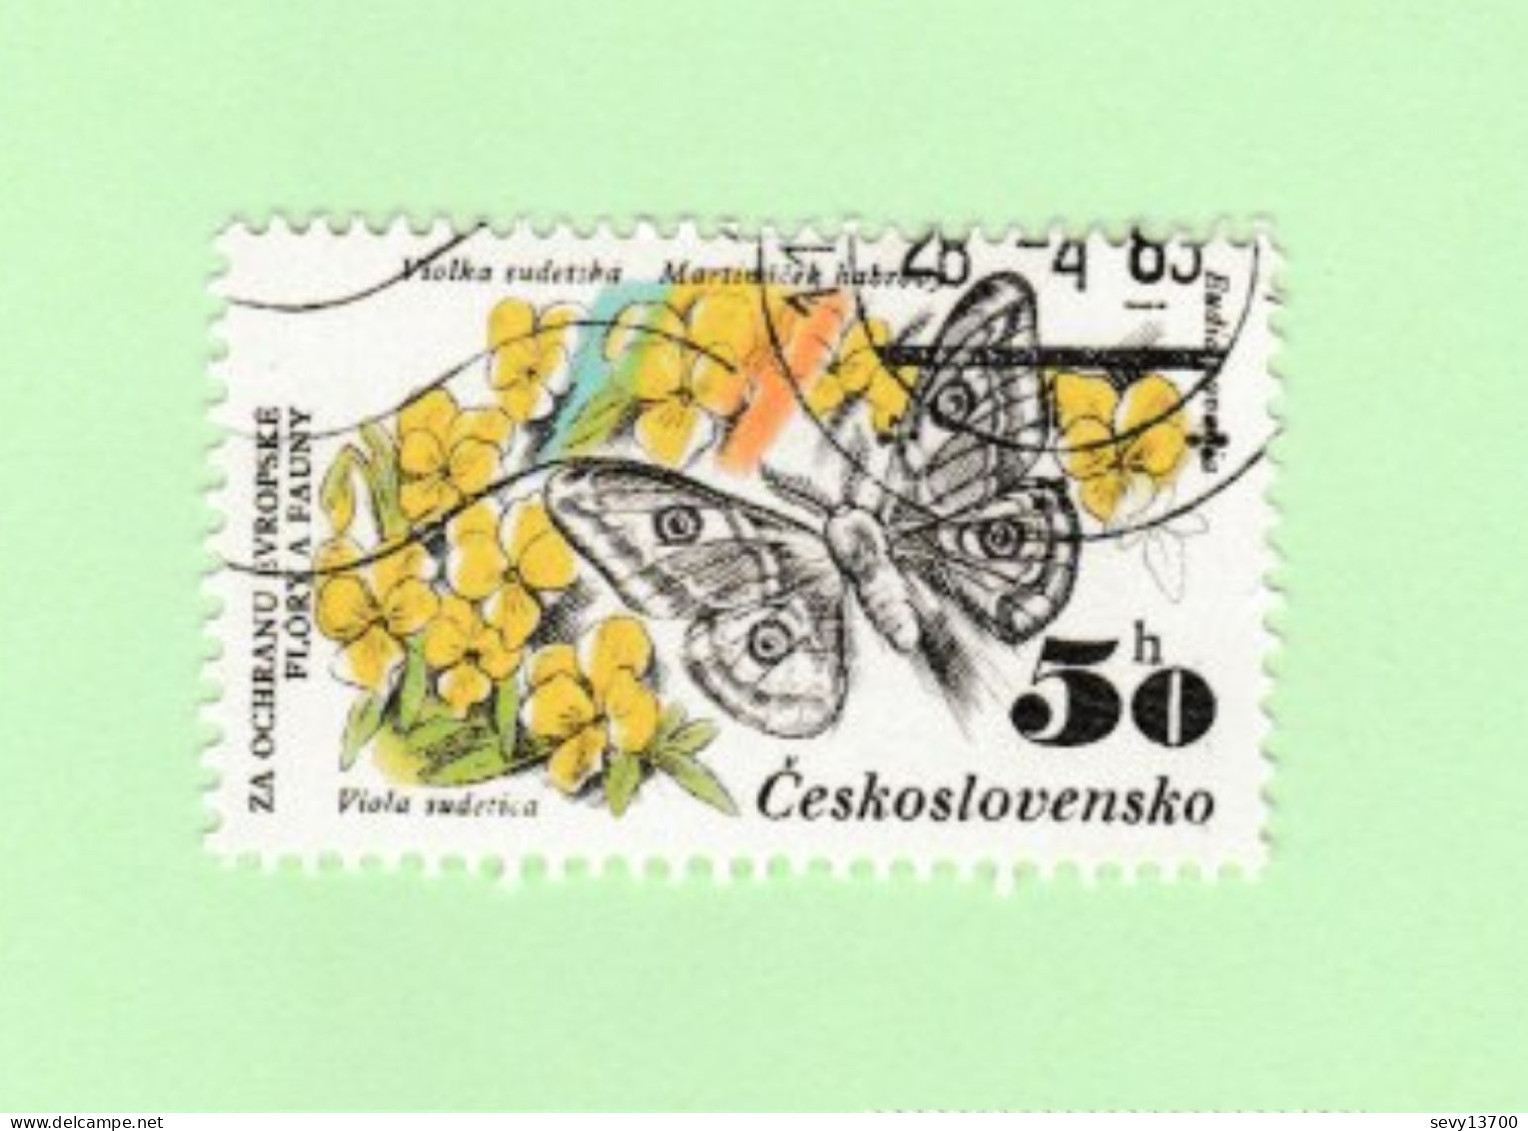 Lot 20 Timbres Les Papillons Roumanie Comores Mauritanie Nle Zélande Australie Malaisie Grenade Cuba Tchécoslovaquie DDR - Schmetterlinge